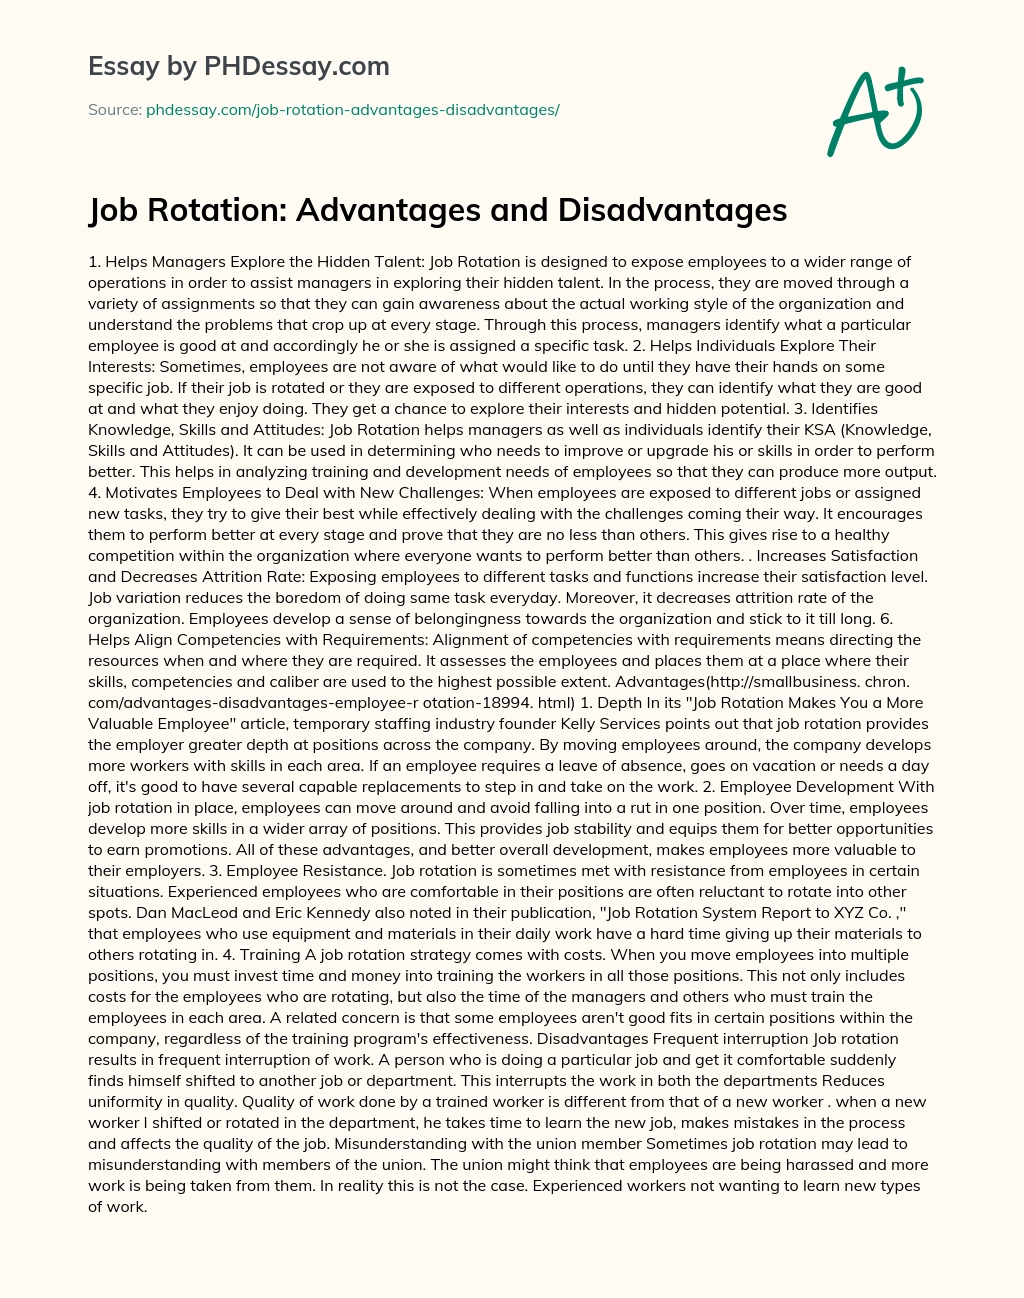 Job Rotation: Advantages and Disadvantages essay